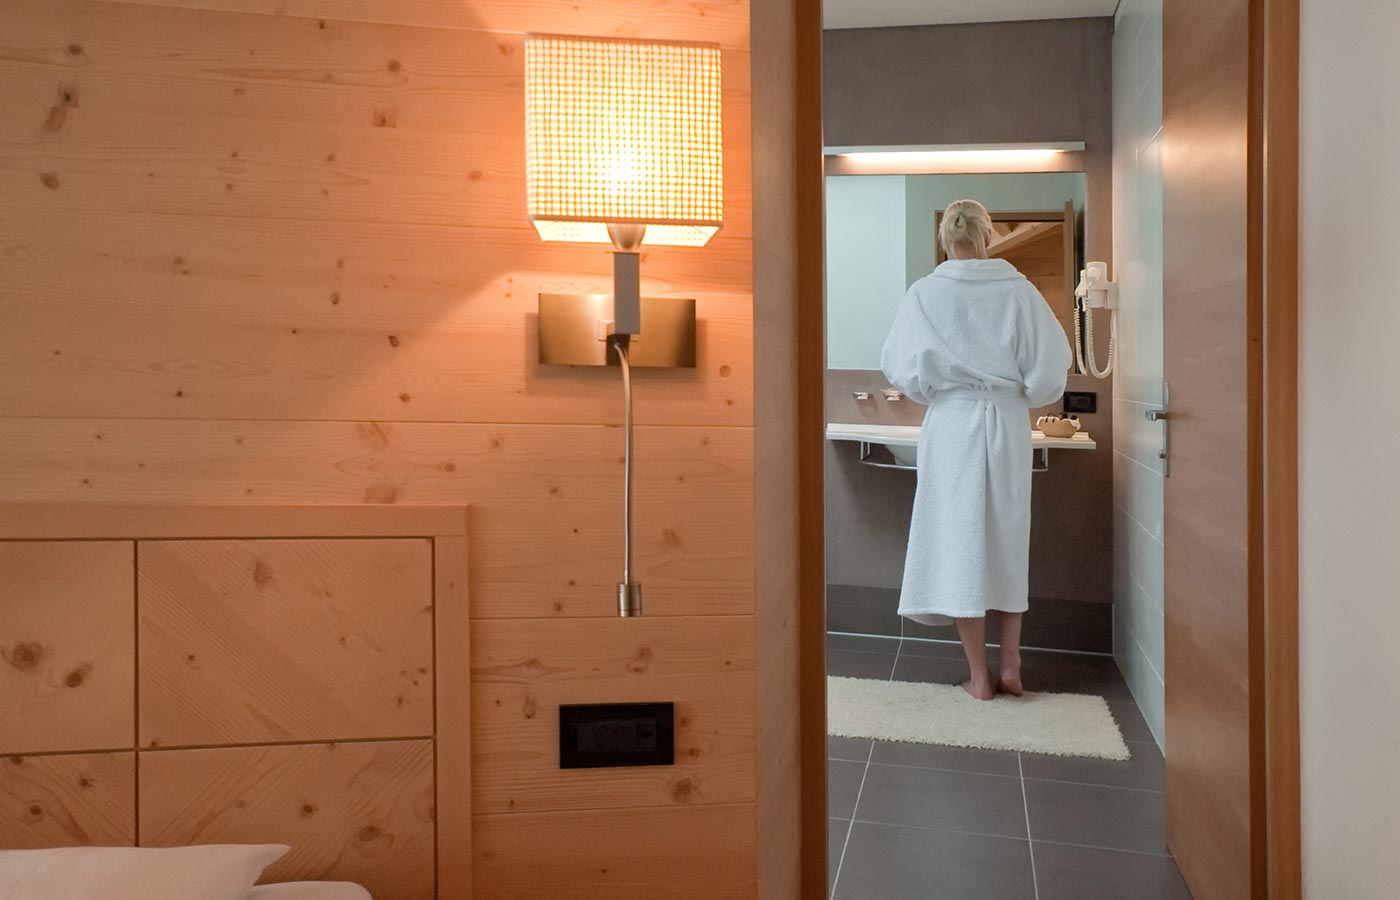 Eine Frau steht vor dem Spiegel im Badezimmer des Hotels Cavallino